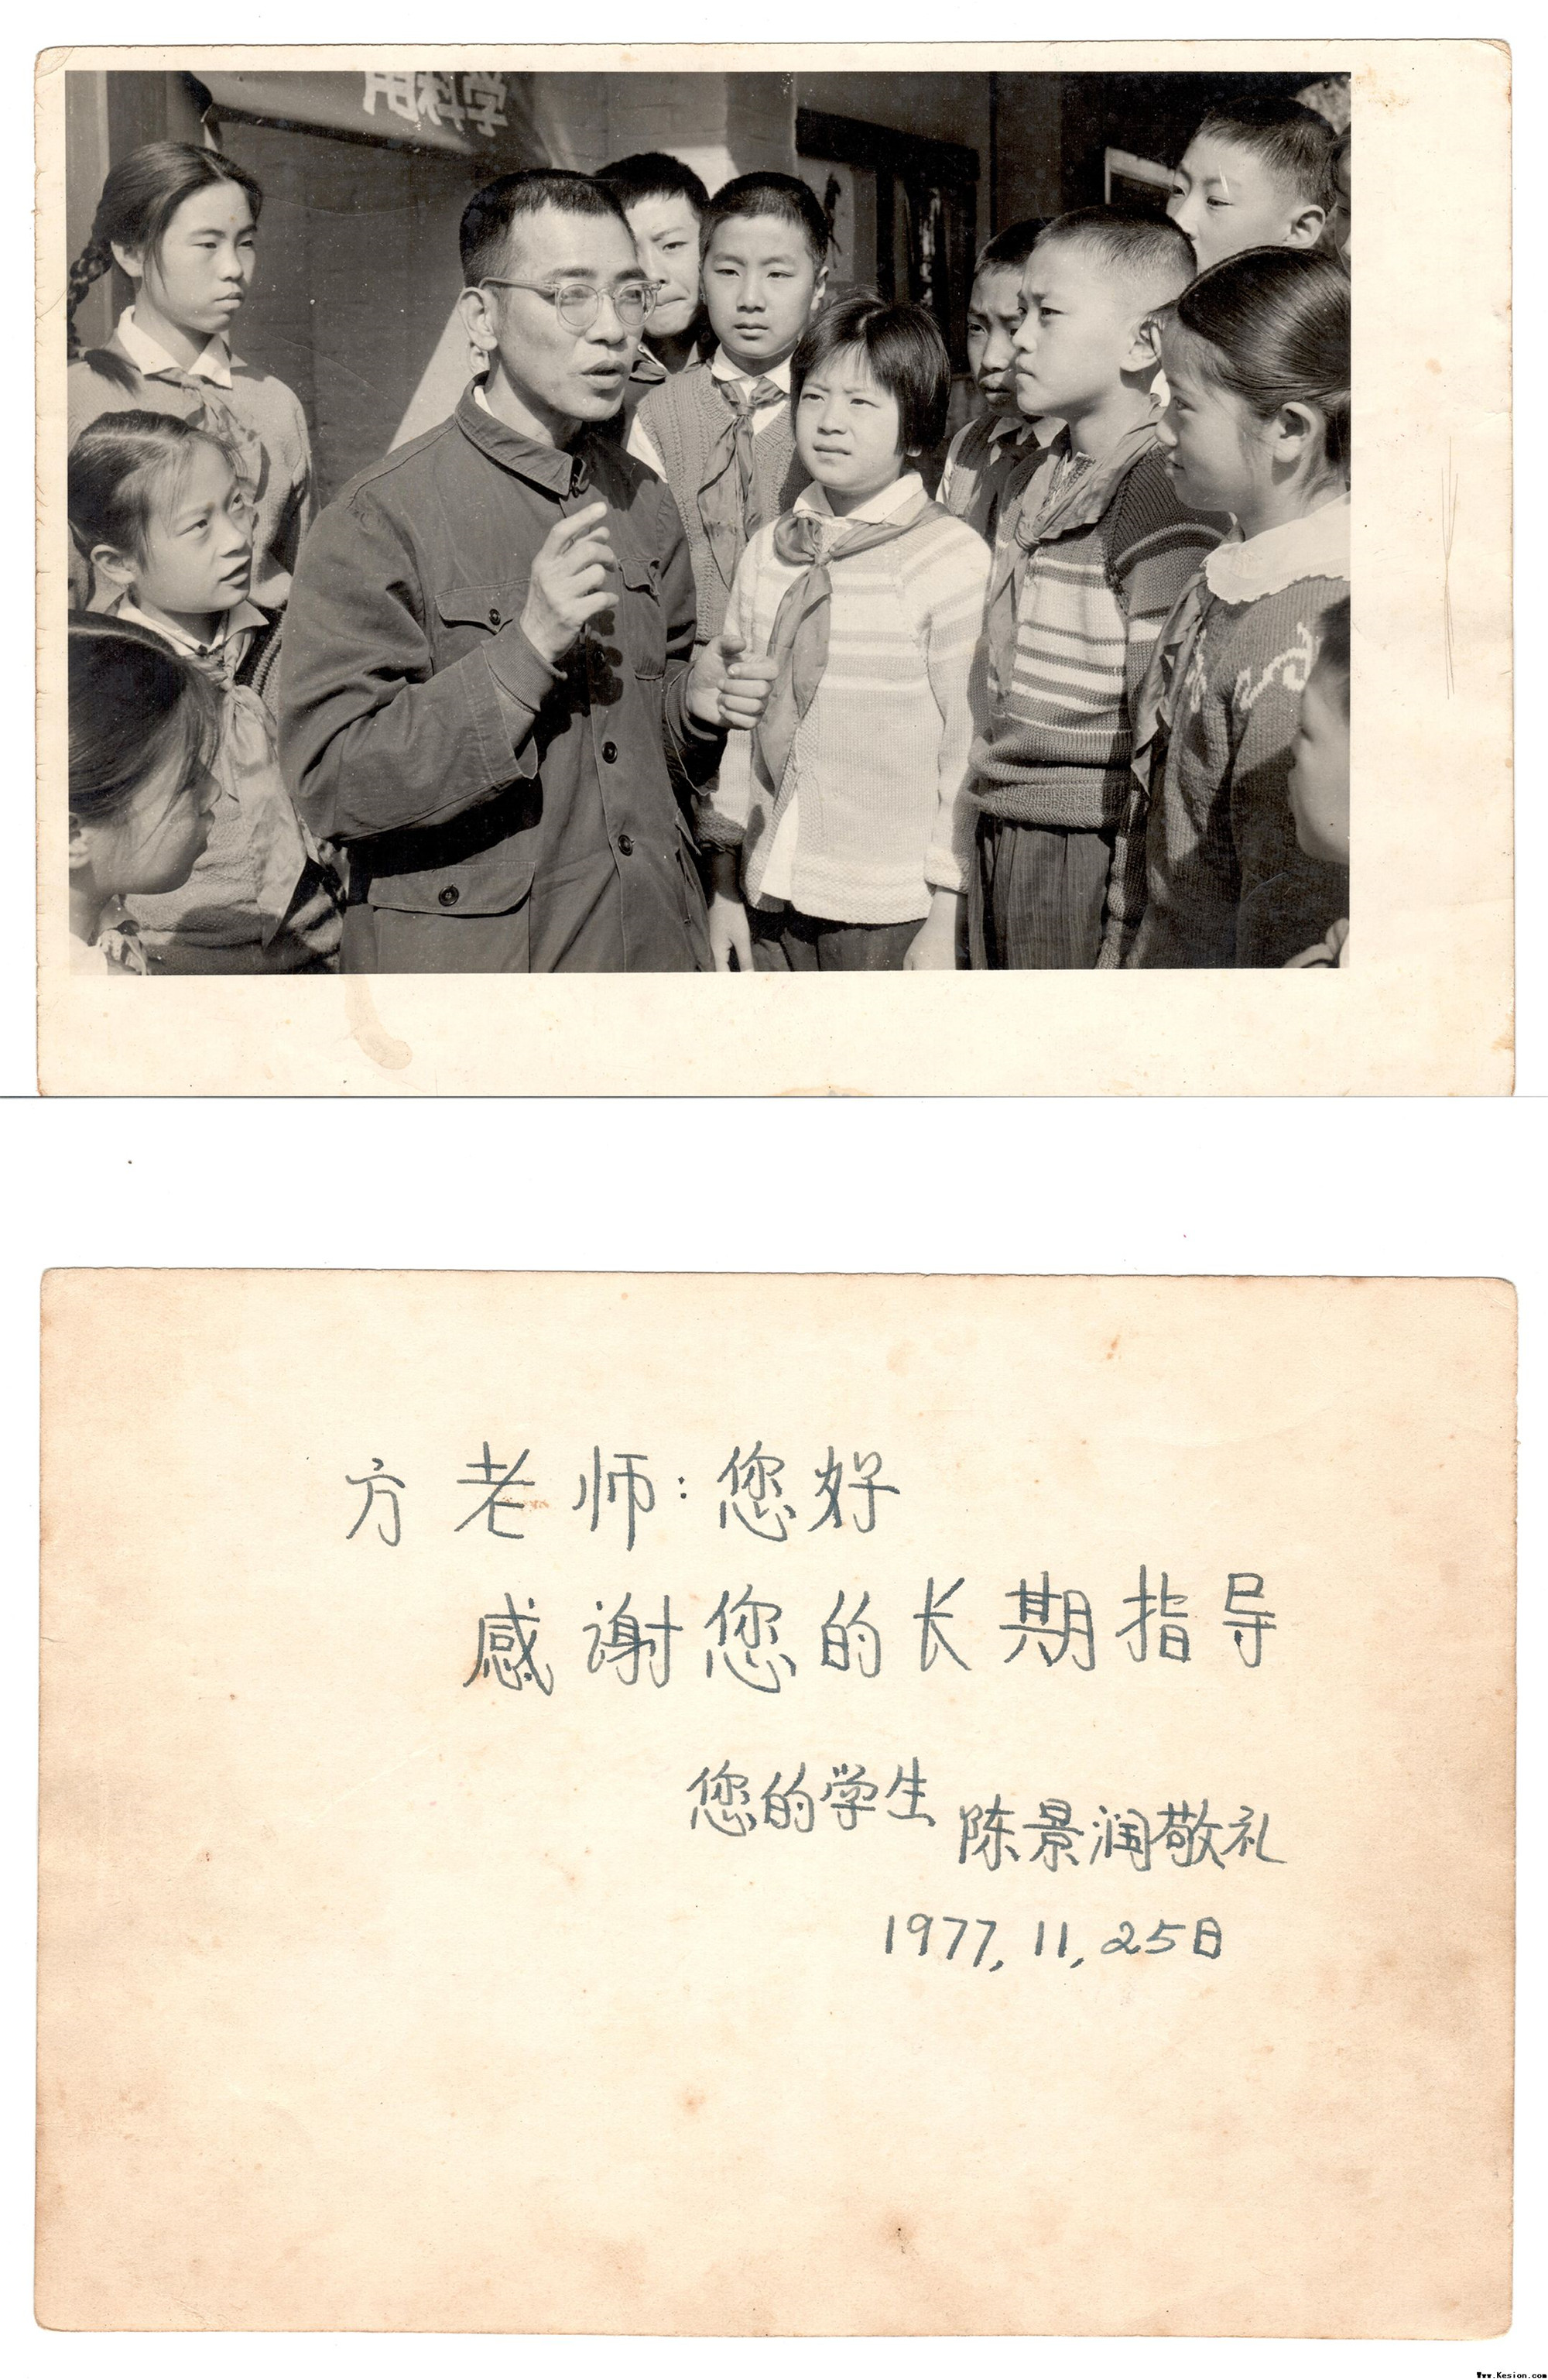 1977年11月25日陈景润赠送方德植先生的照片